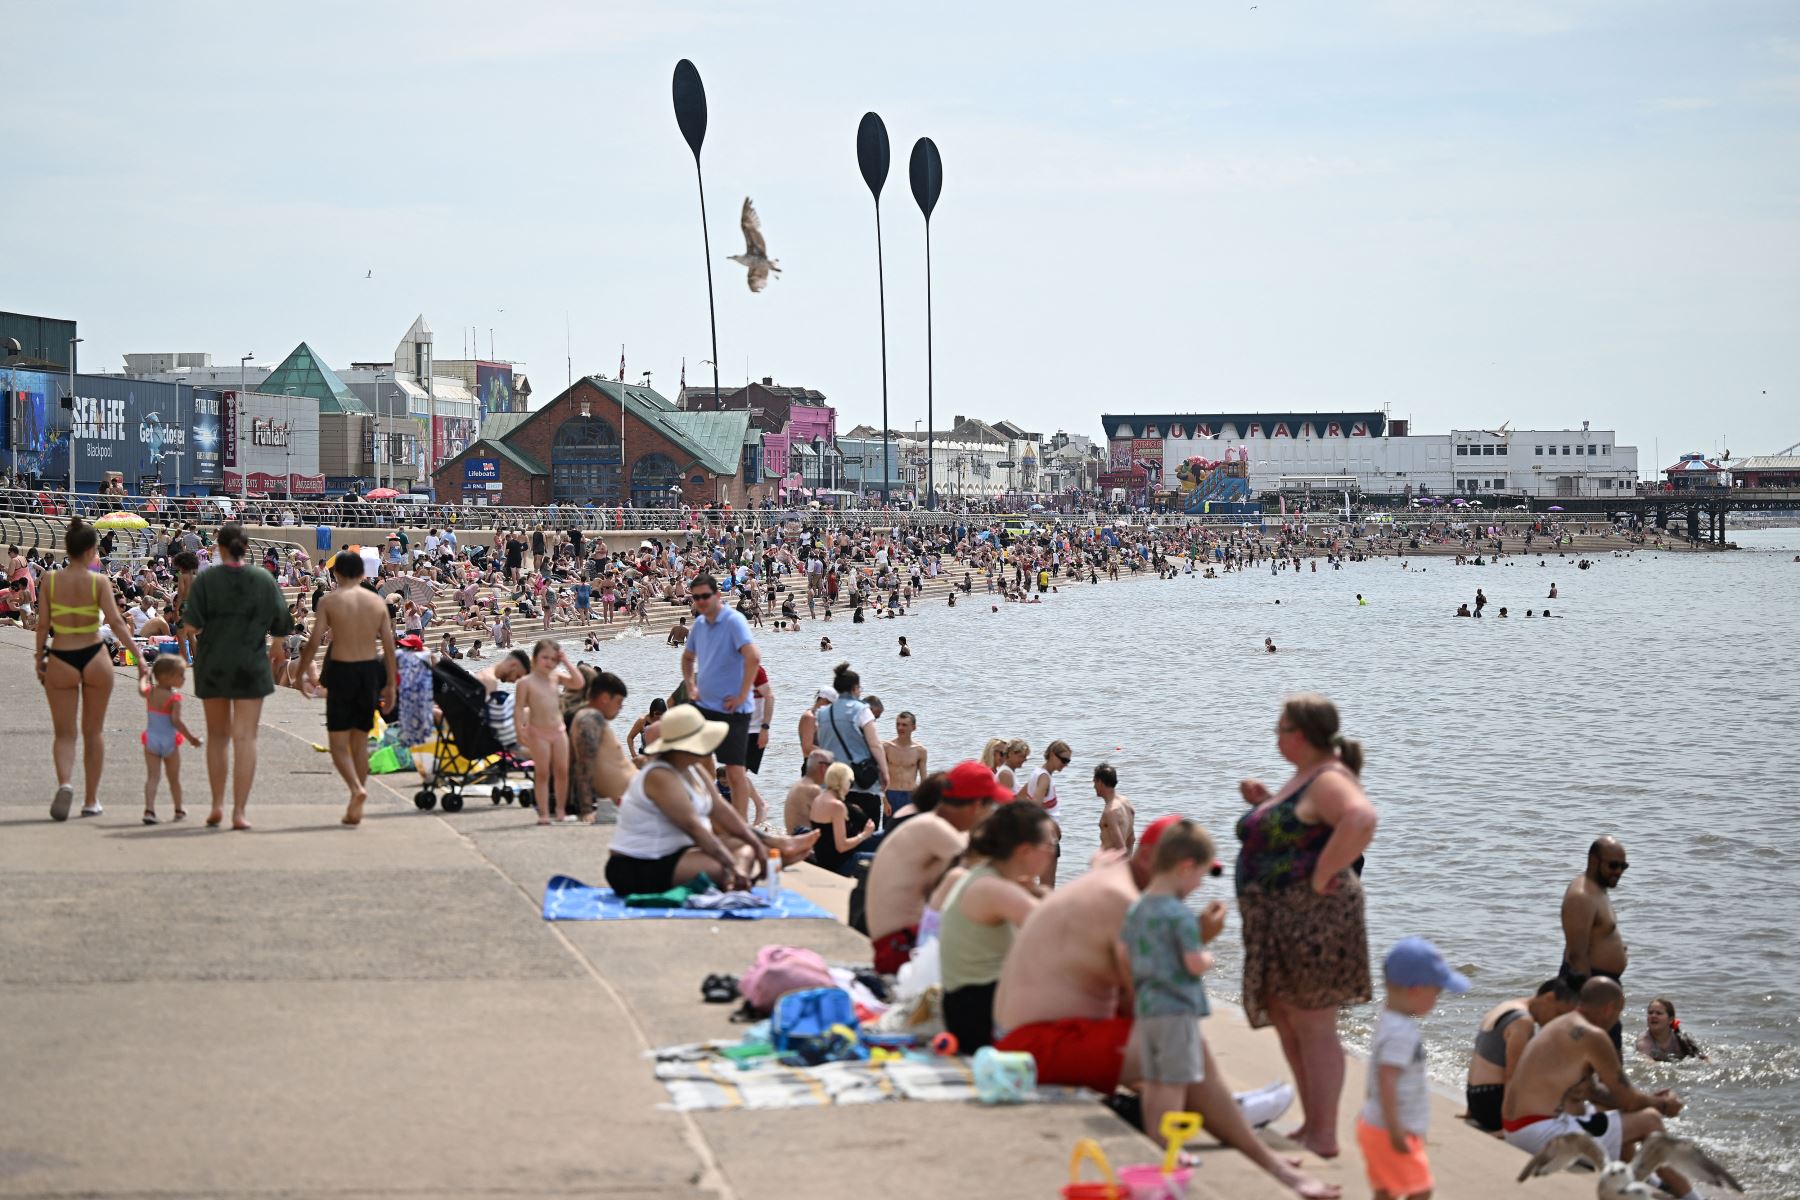 Los bañistas disfrutan del sol y el mar en Blackpool, noroeste de Inglaterra.
Foto: AFP